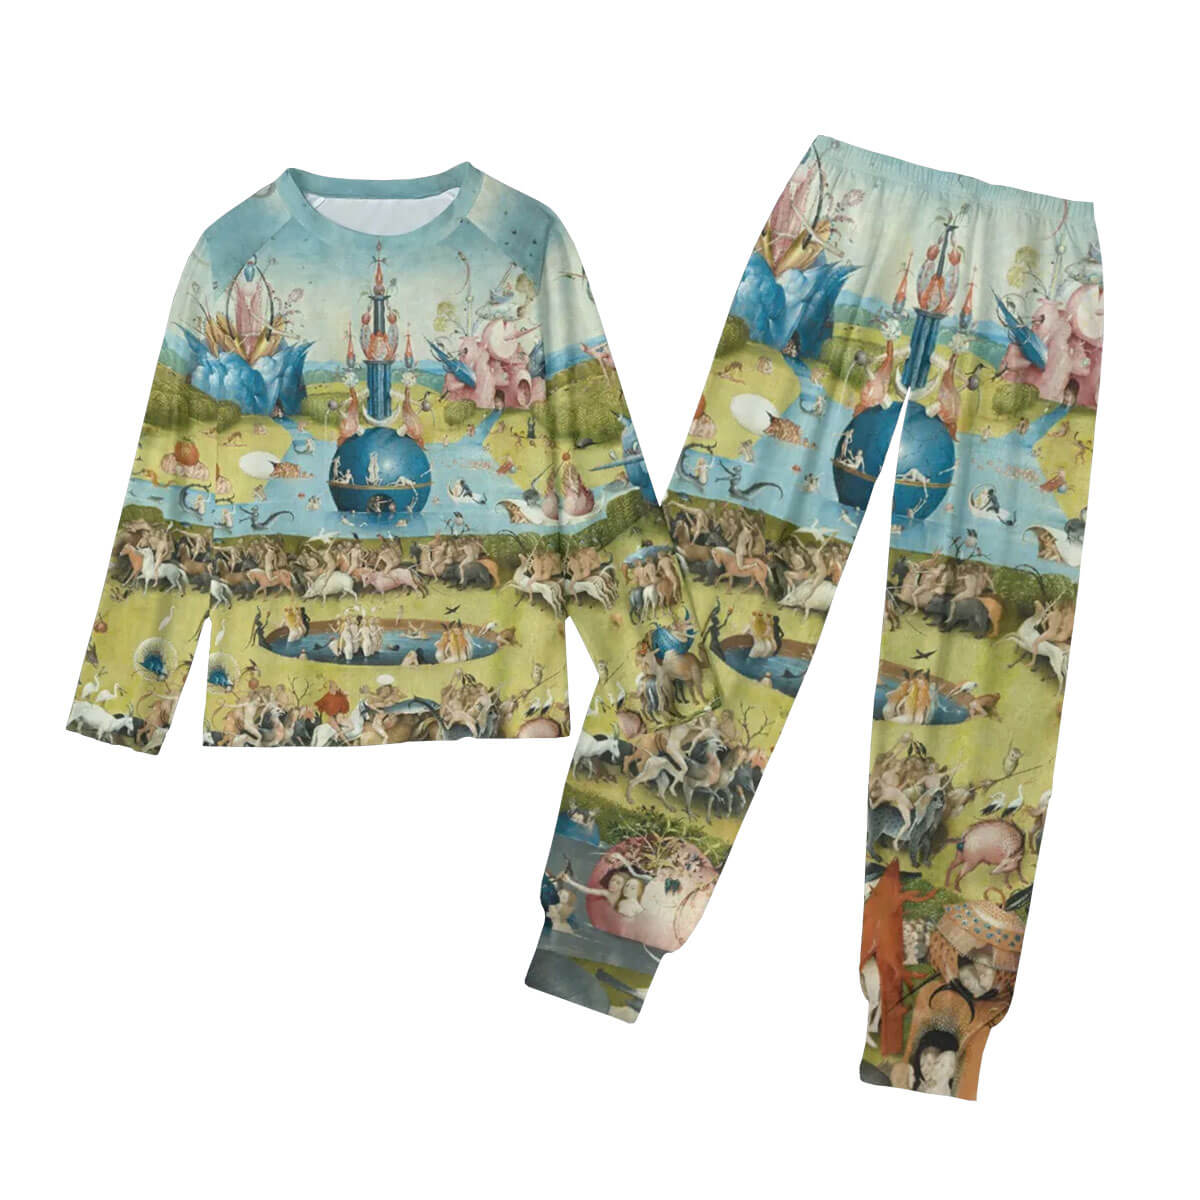 Hieronymus Bosch Pajamas - Front View